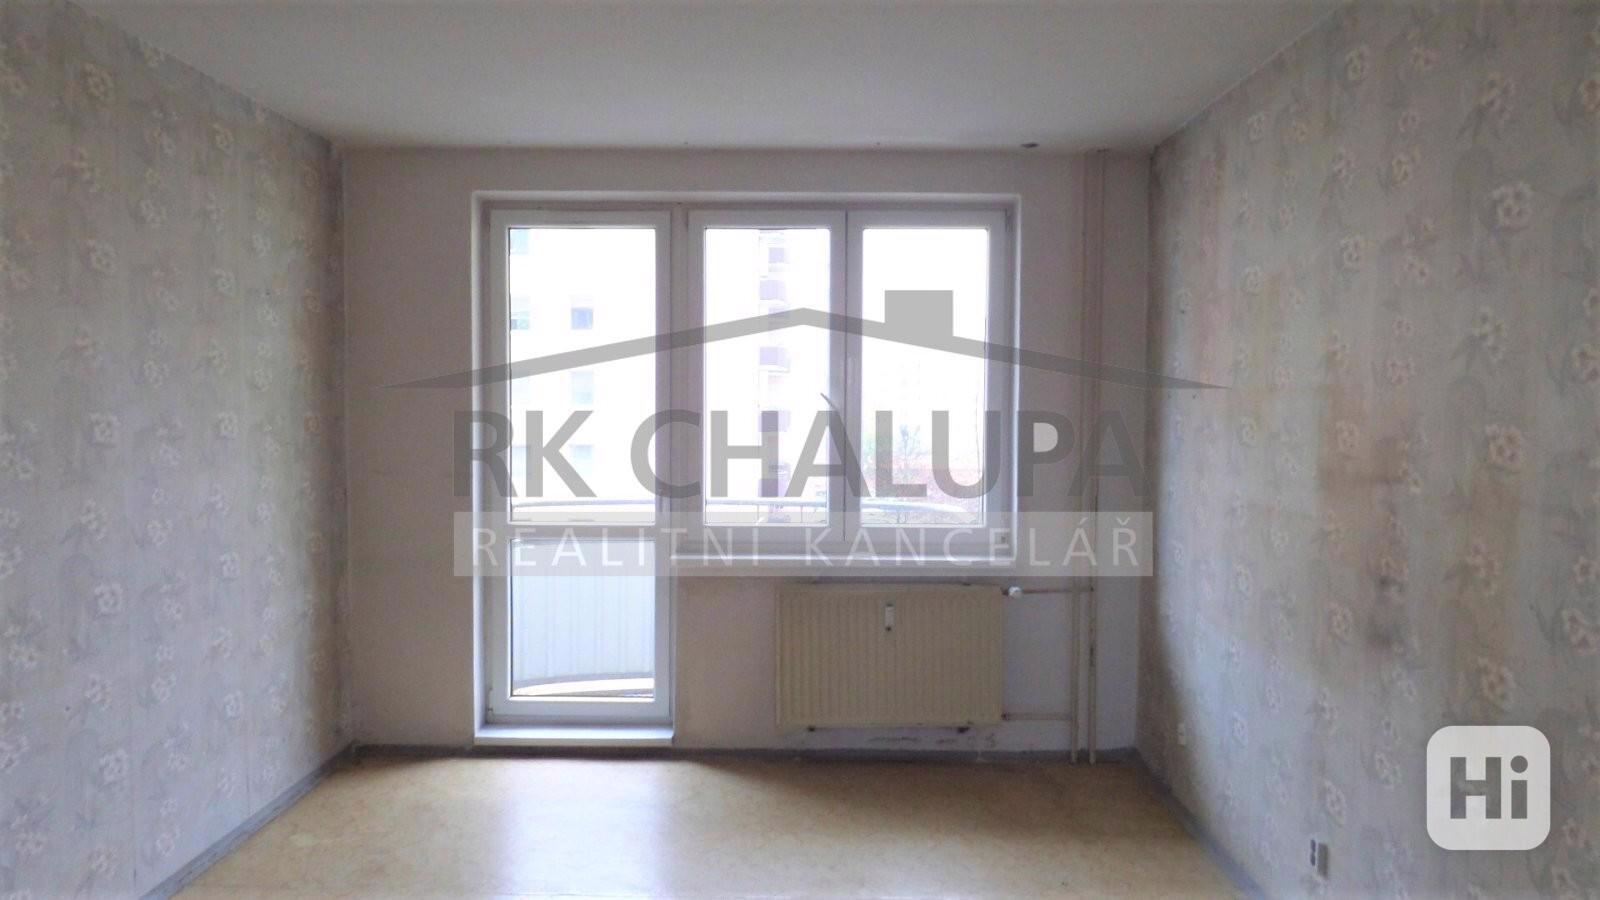 Prodej dr. bytu 4+1, ul. K. Štěcha v Českých Budějovicích, 4.p., 85 m2, balkon - foto 1